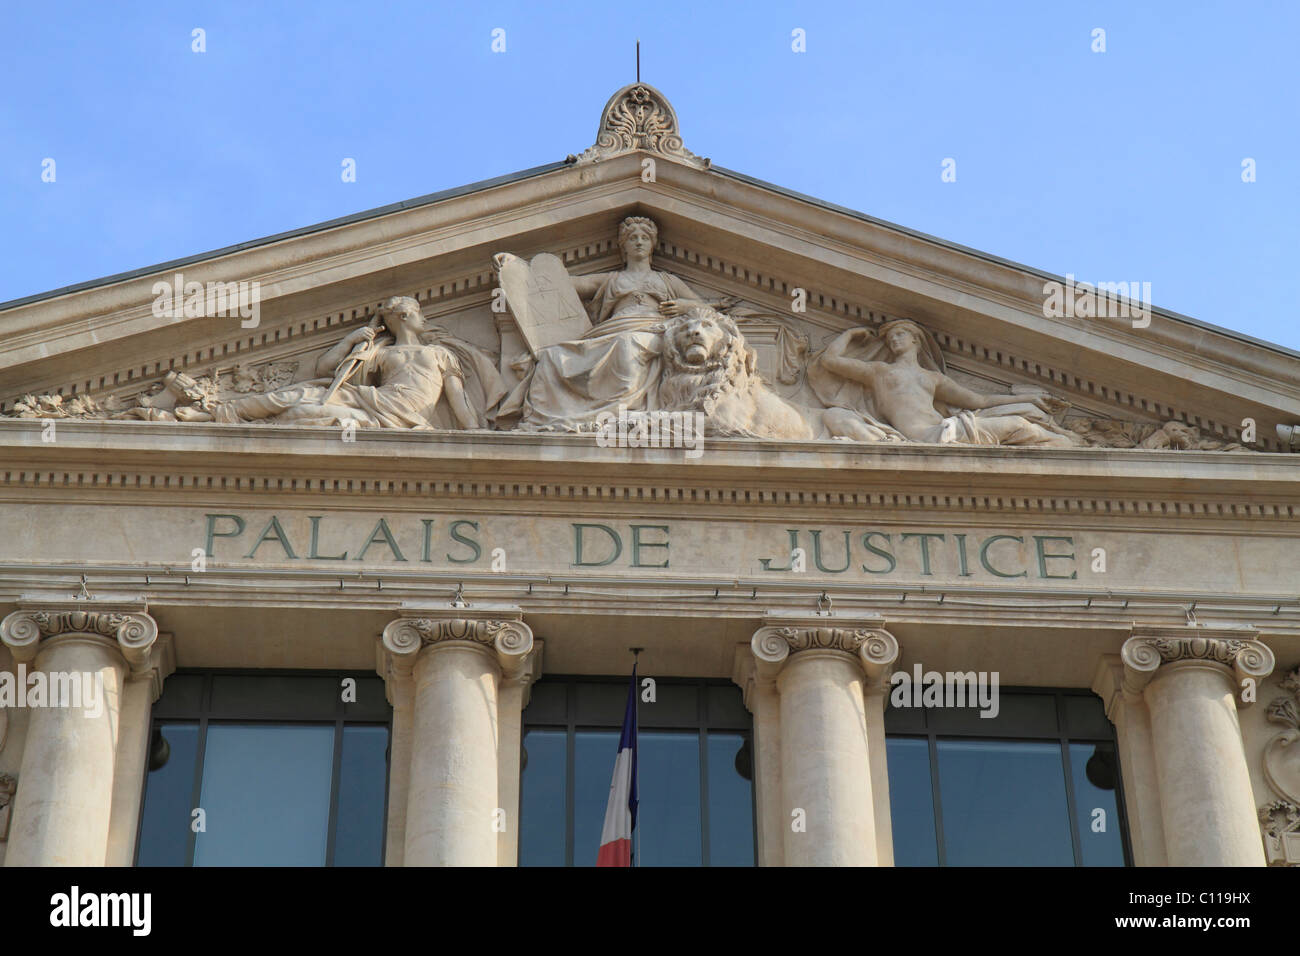 Tribunal d'Instance, Palais de Justice, Place du Palais, Nice, Alpes Maritimes, Région Provence-Alpes-Côte d'Azur, France Stock Photo